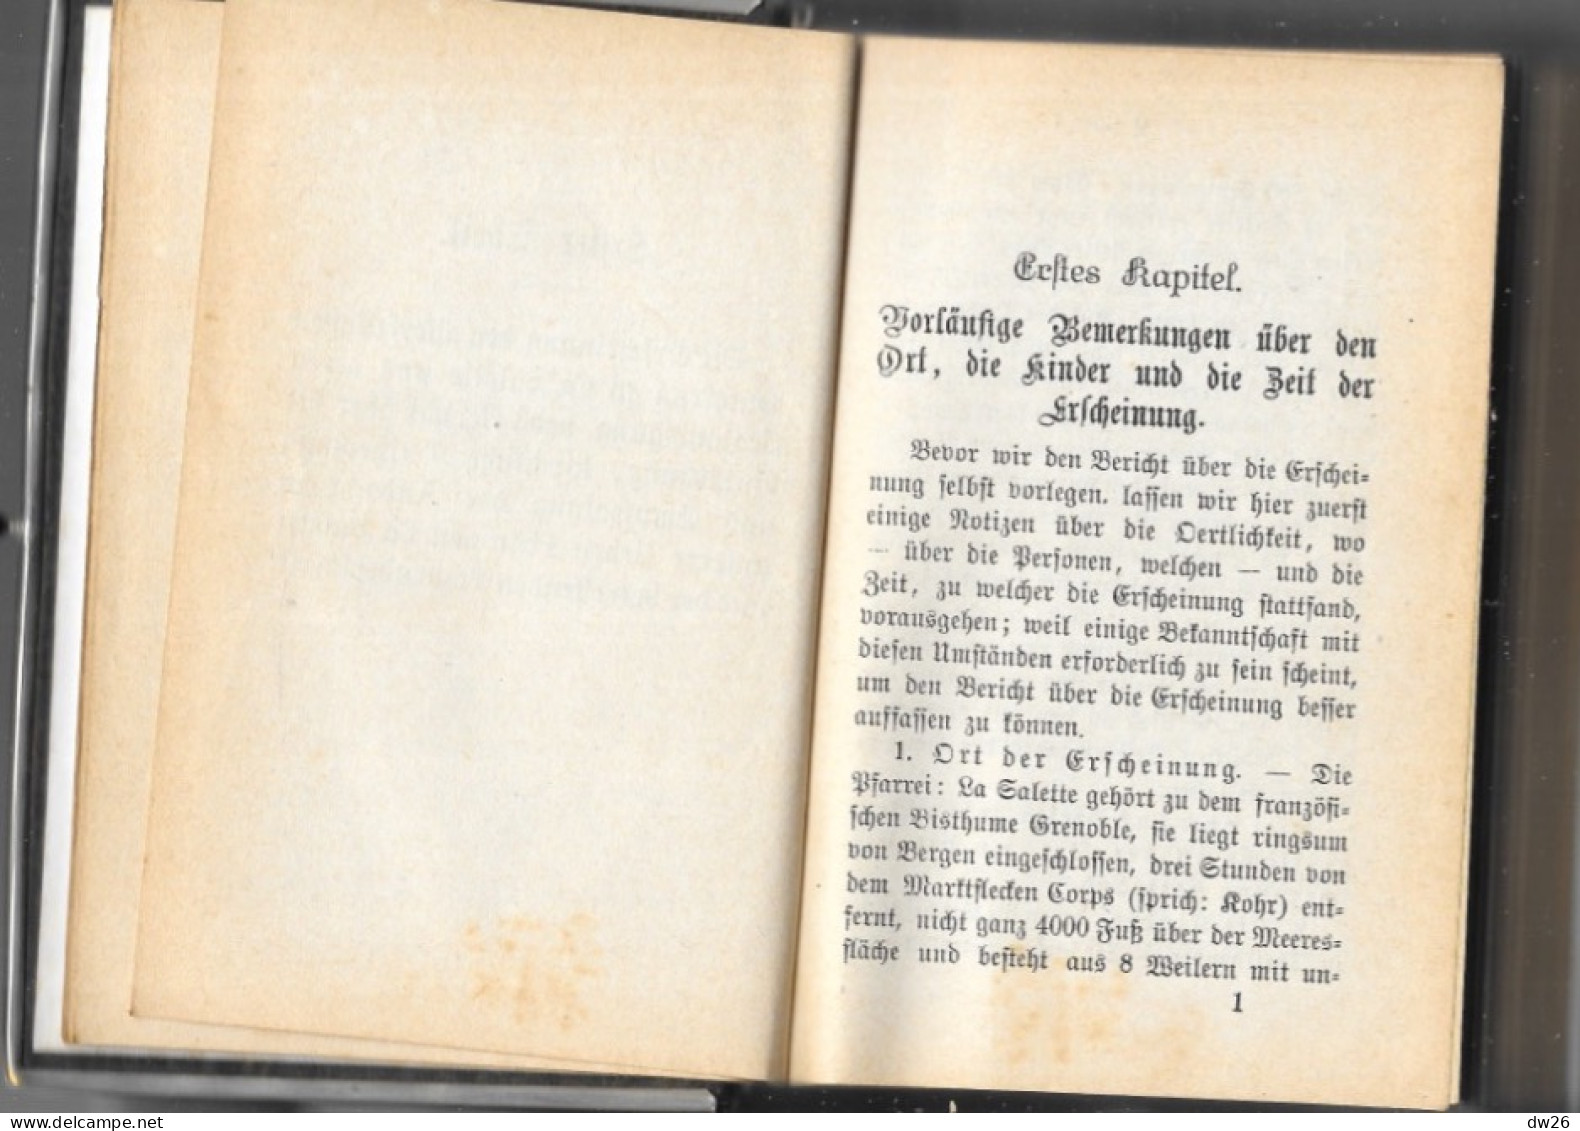 Buch Im Deutschen Gothic-Stil - Maria Von La Salette (Notre Dame De La Salette) Ein Gebet Und Erbauungsbuch - Christentum